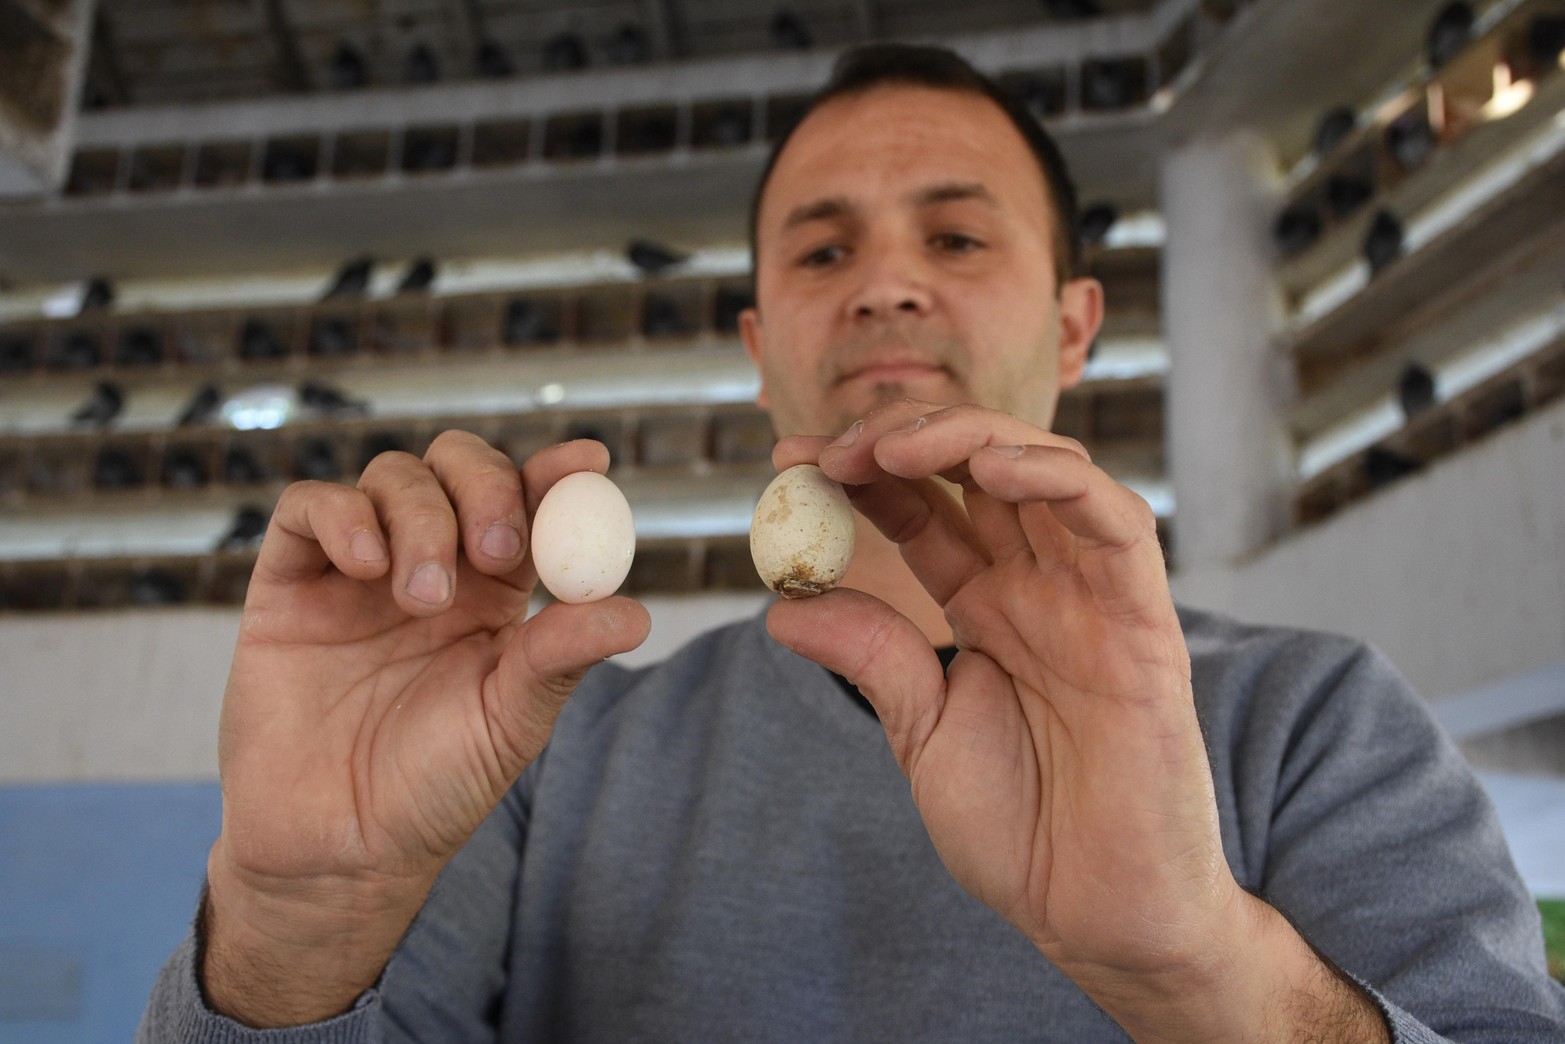 Método inédito en Santa Fe. En el Palomar sustituyen huevos fértiles por otros de yeso para controlar la población de aves. Lo aplican ciudades como Madrid o Barcelona para evitar la sobrepoblación. Desde el municipio sostienen que consiguieron un 90% de efectividad.